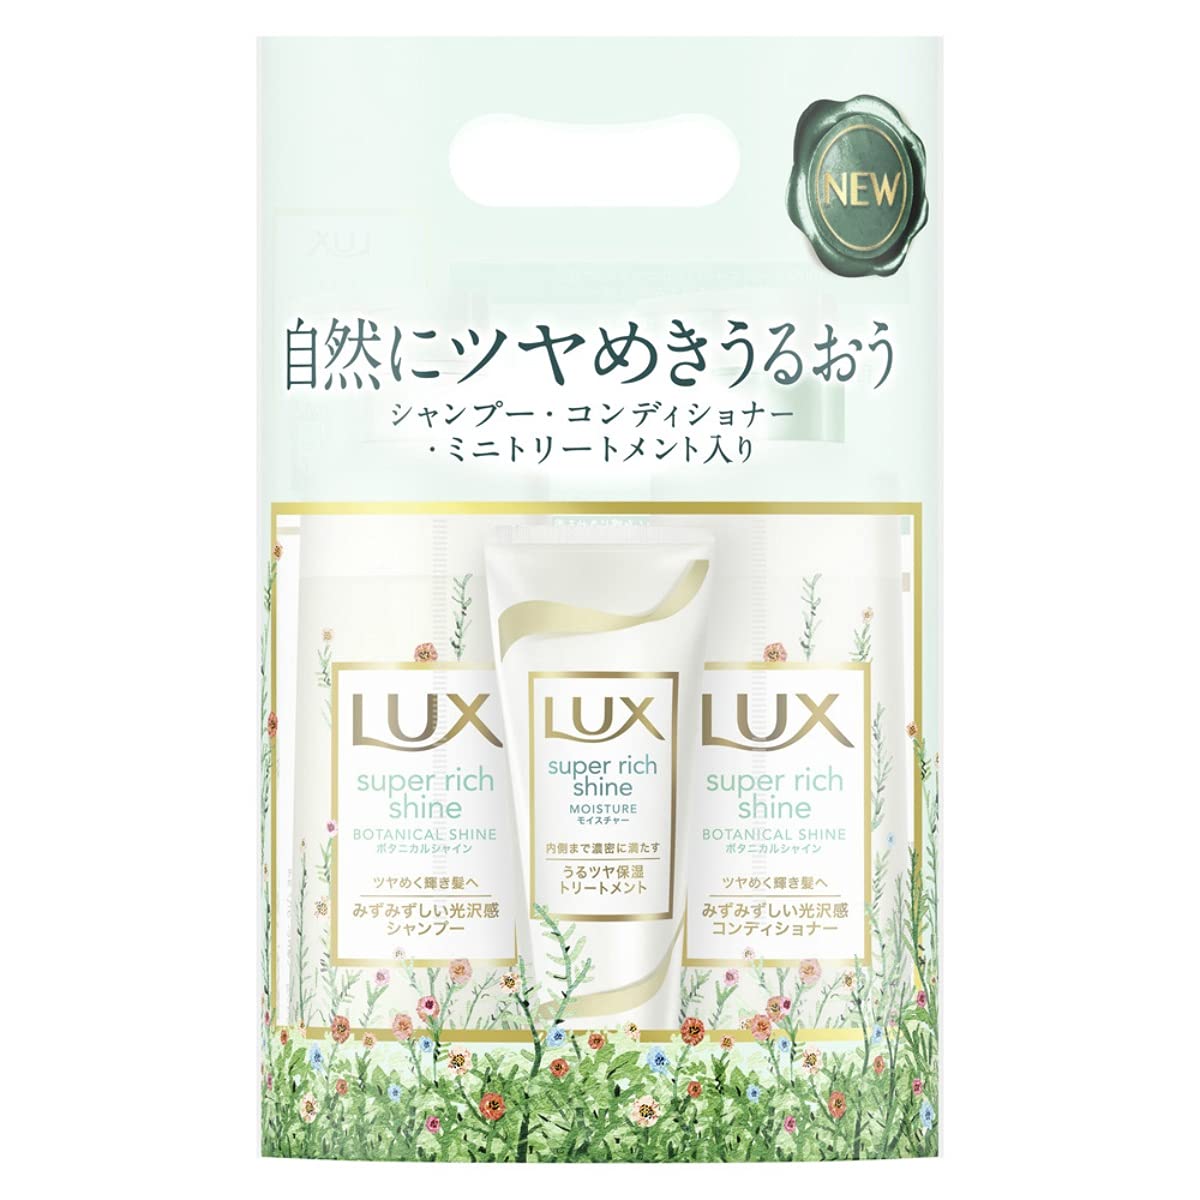 Lux Super Rich Shine Botanical Moisture Hair Set with Hair Mask 430ml + 430g + 100g